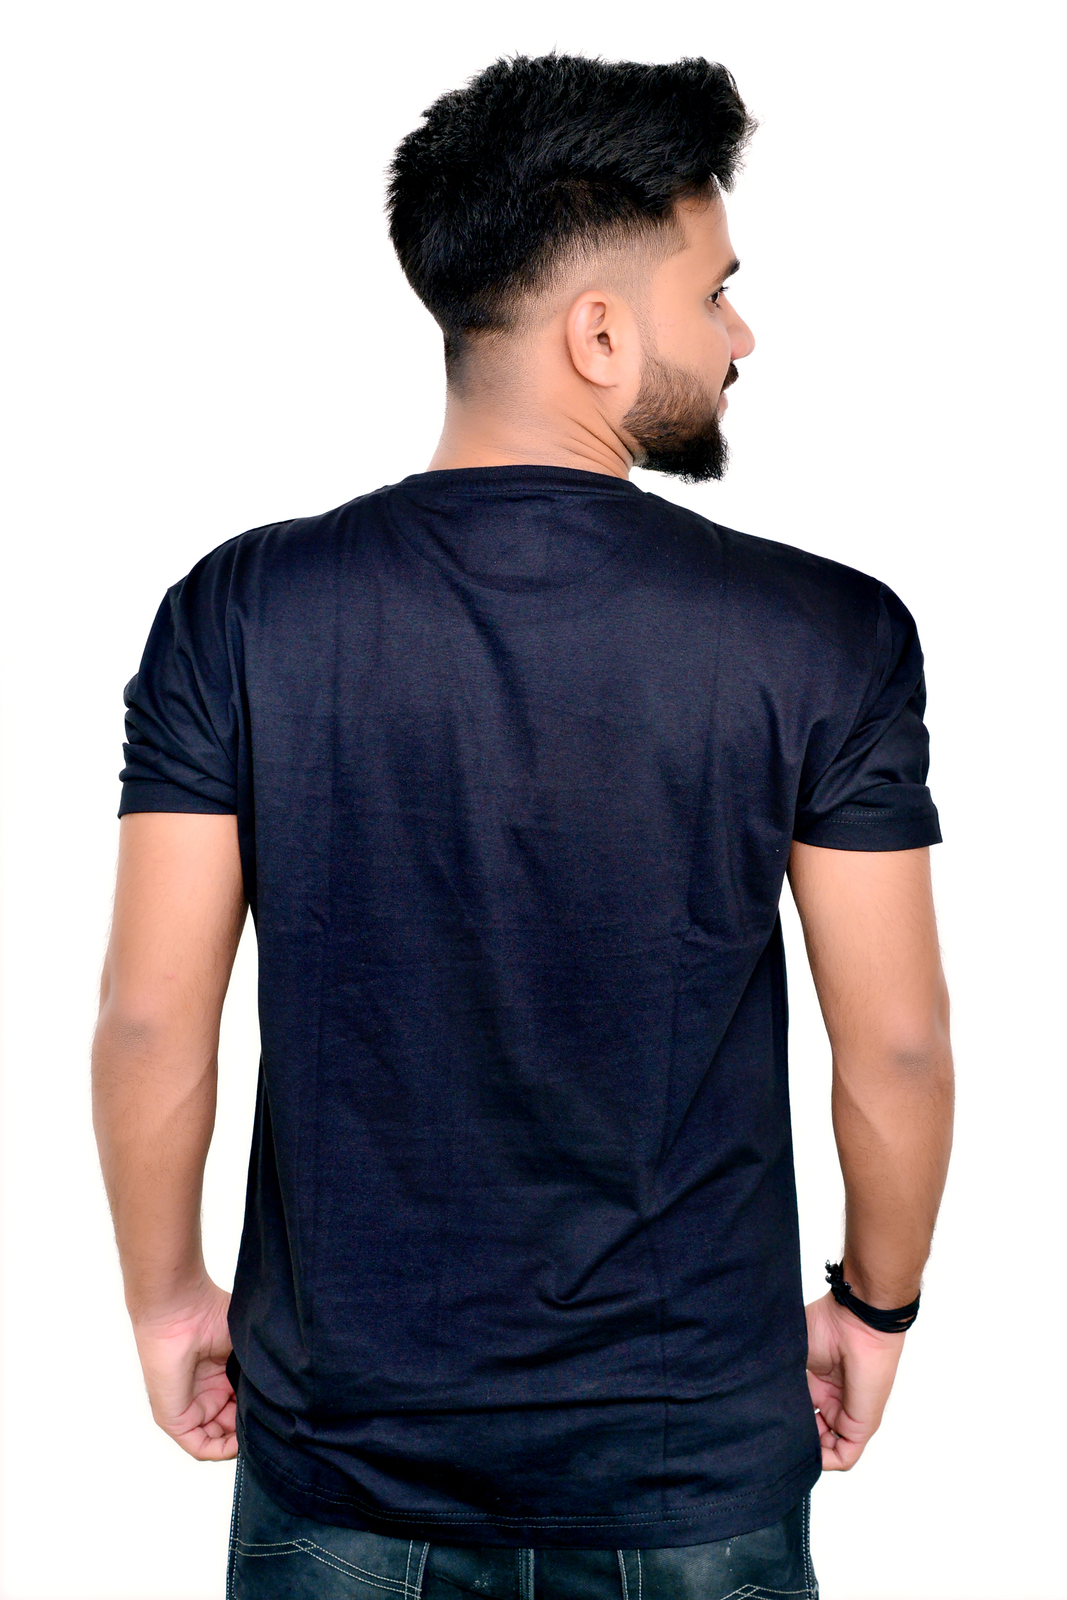 Men Black Pure Cotton T-shirt By BLACKSANDWHITE - 3XL, White